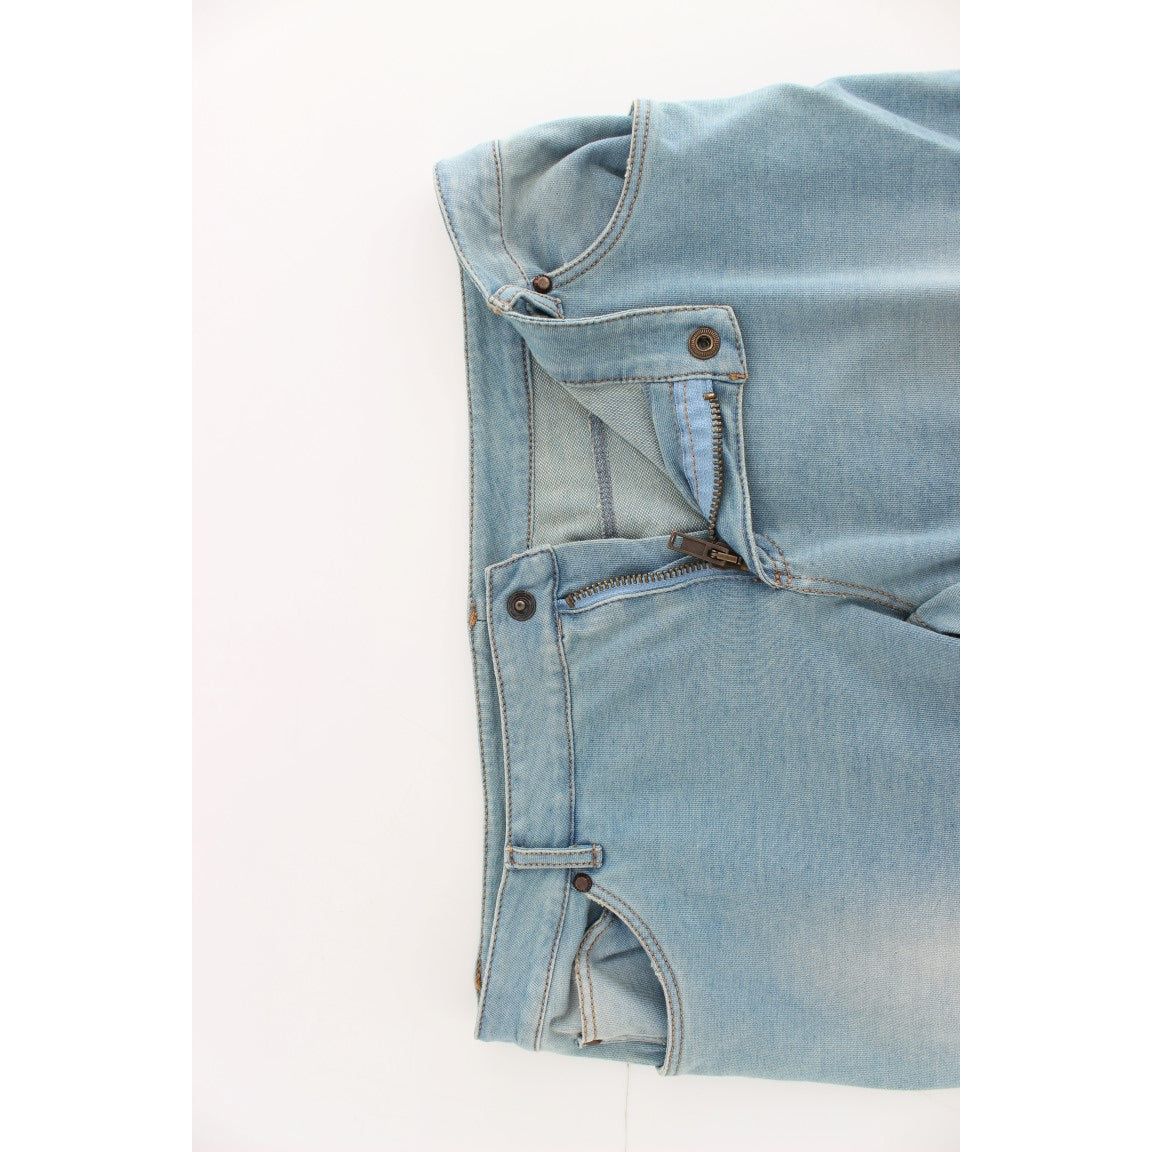 Ermanno Scervino Elegant Light Blue Capri Jeans Jeans & Pants blue-capri-pants-cropped-jeans